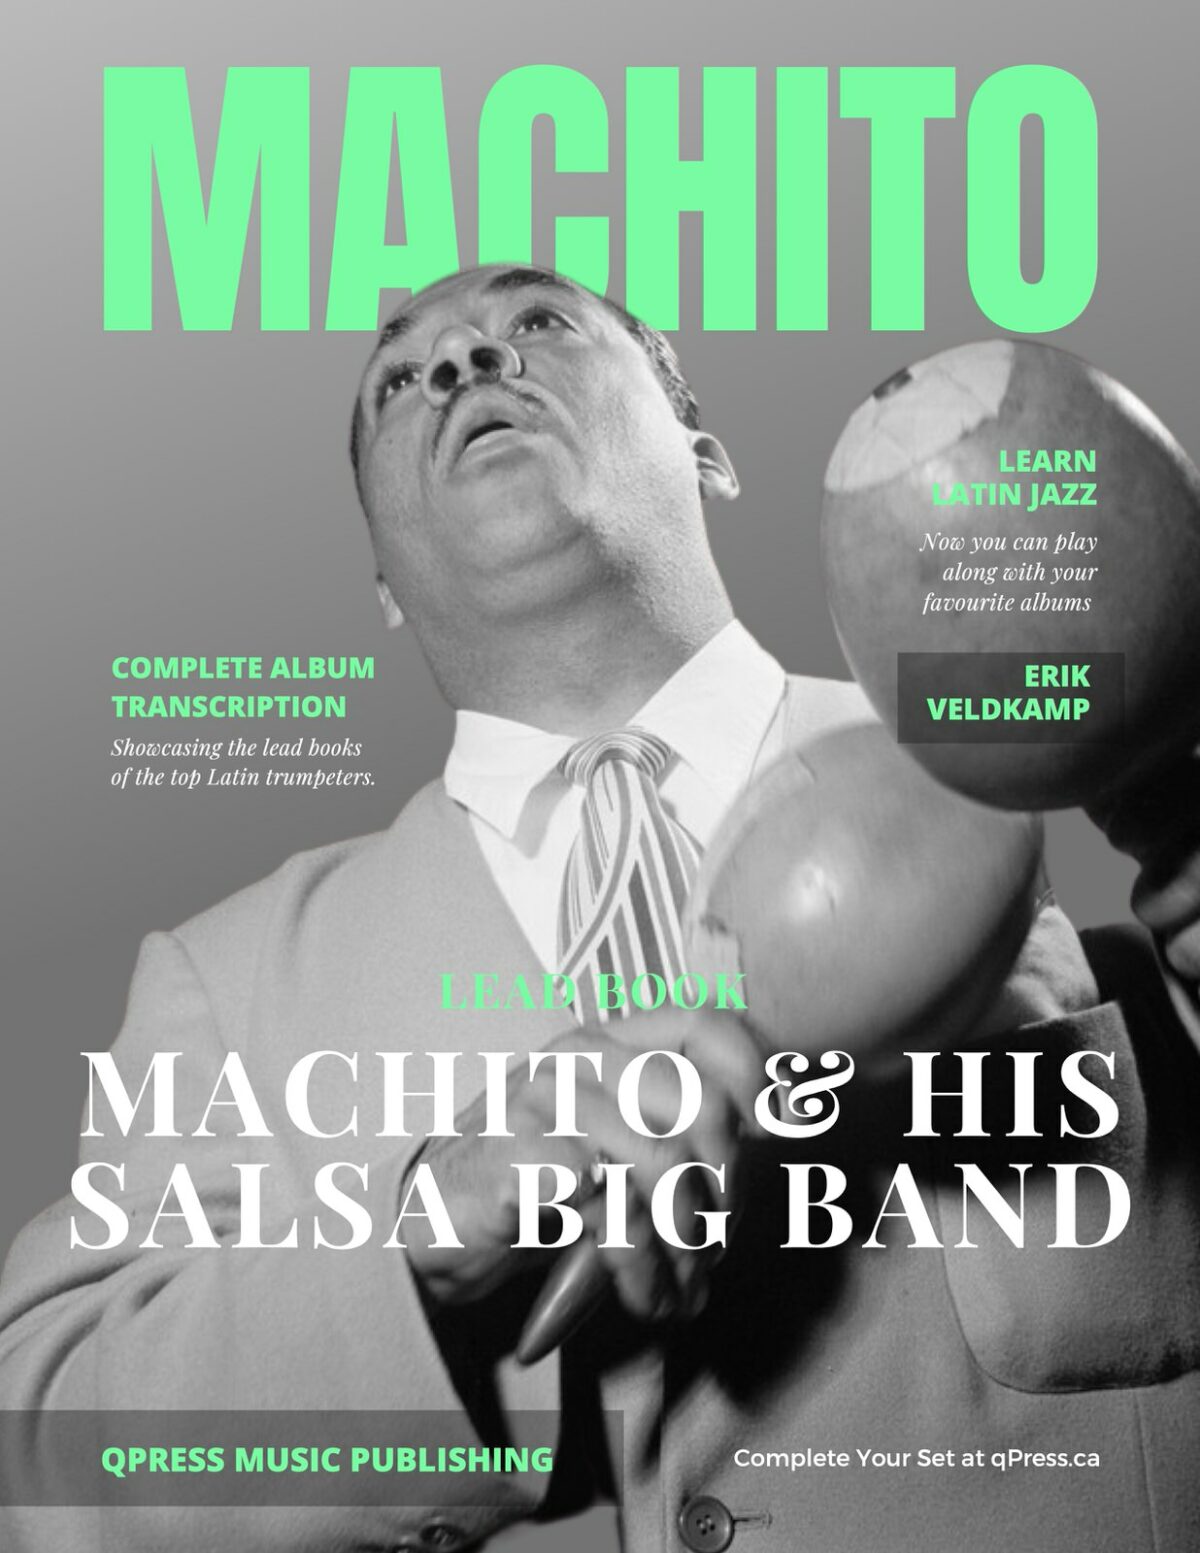 "Machito and his Salsa Big Band" Lead Book Transcription